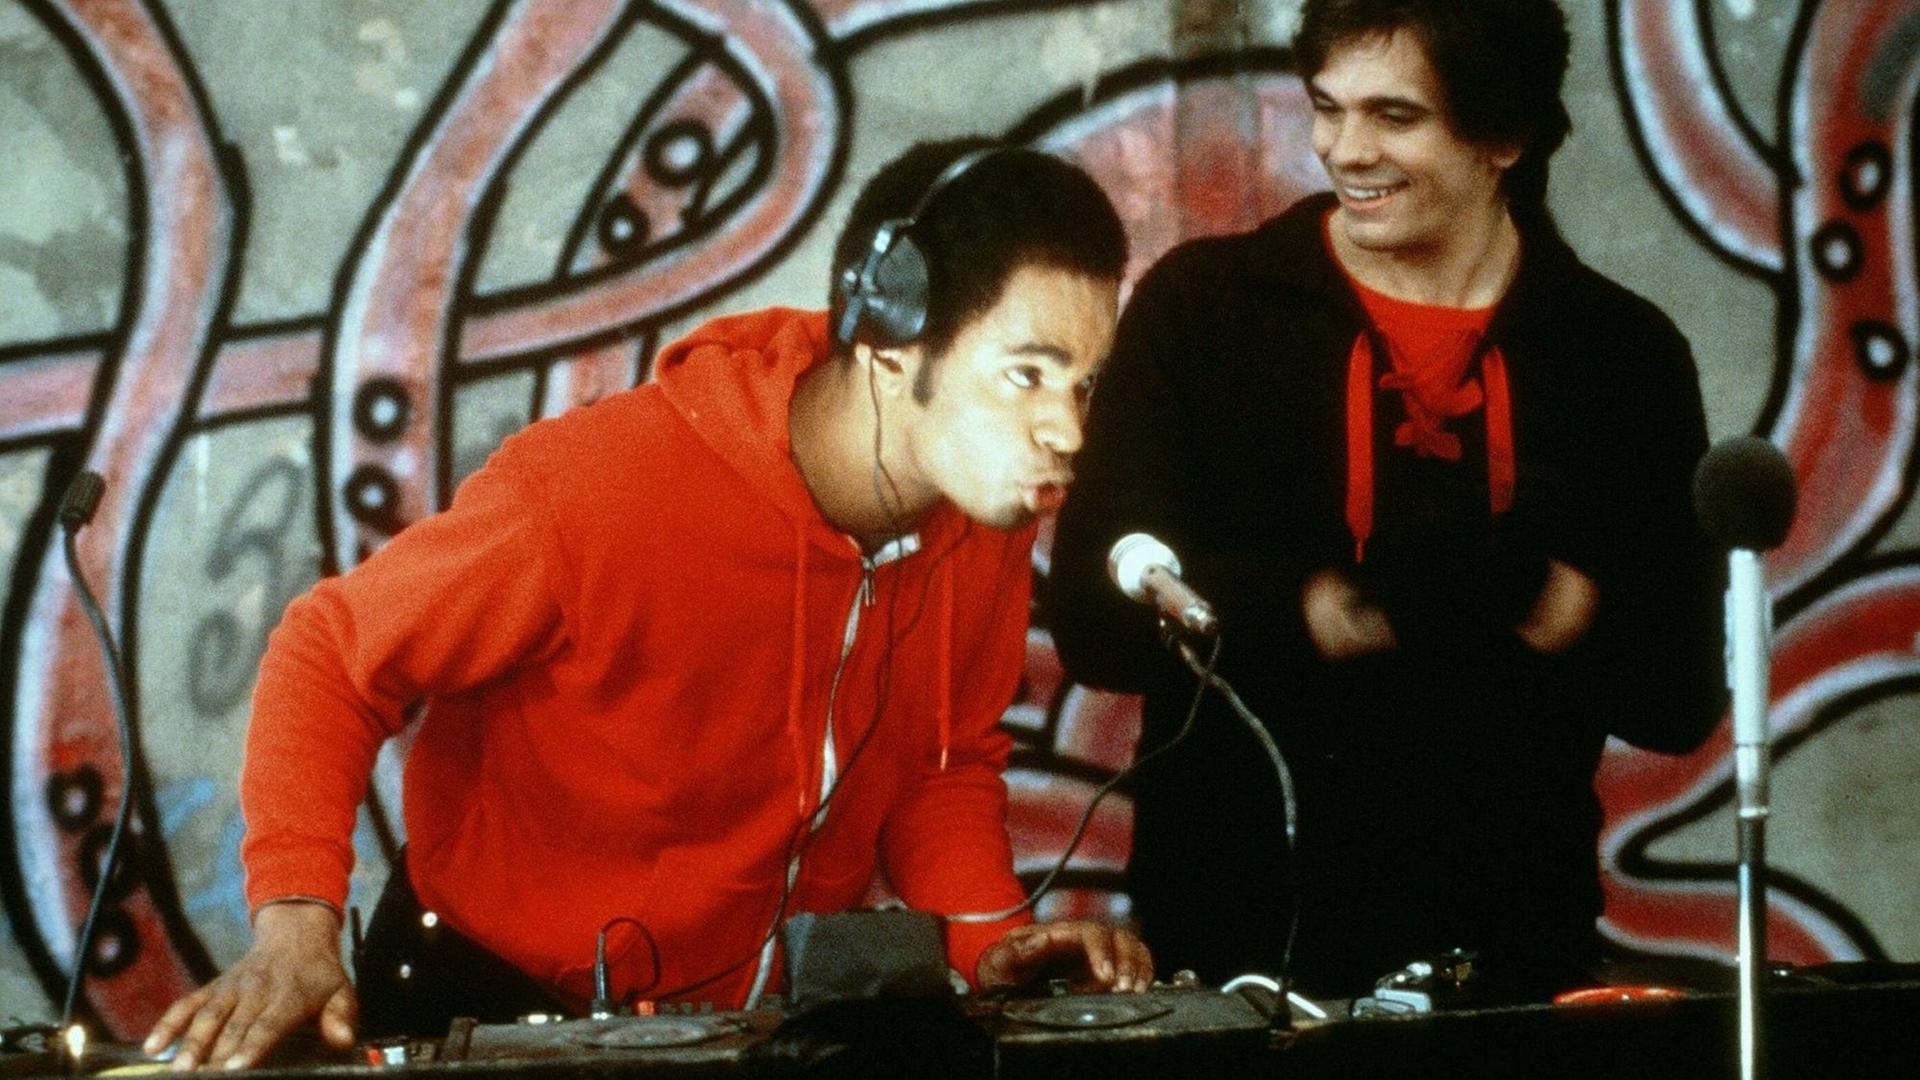 Szene aus dem Film "Beat Street" (1984): Ein DJ scratcht auf einer Blockparty.